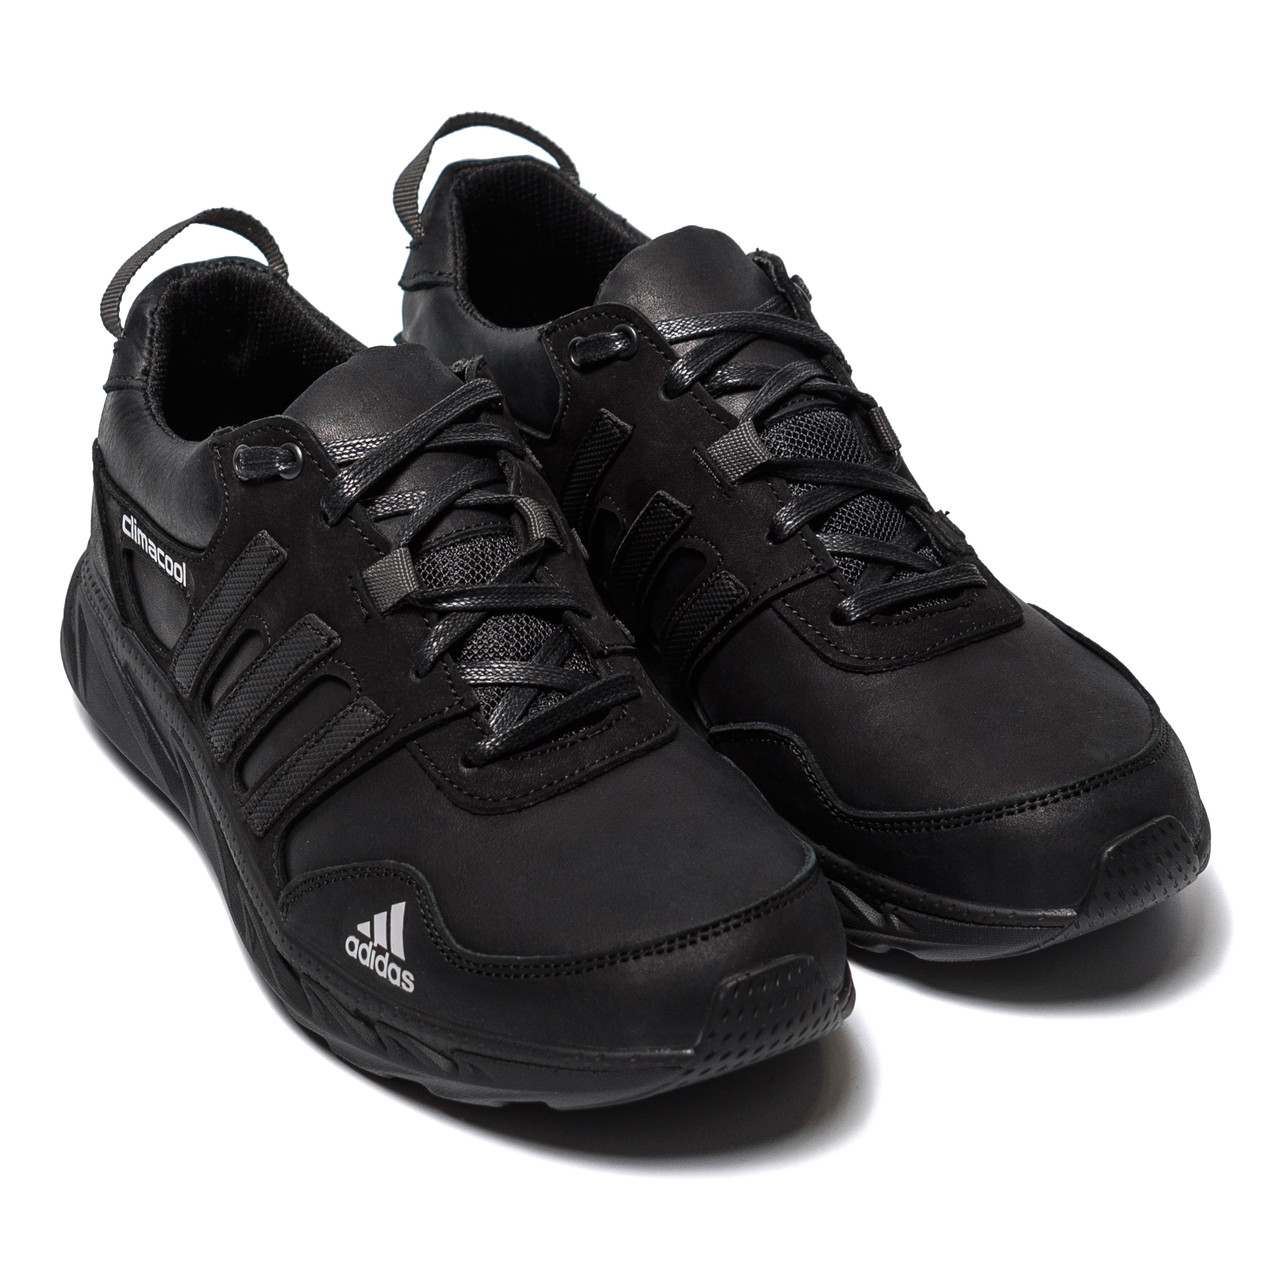 Чоловічі шкіряні кросівки Adidas Climacool Black, кросівки для чоловіків повсякденні адідас